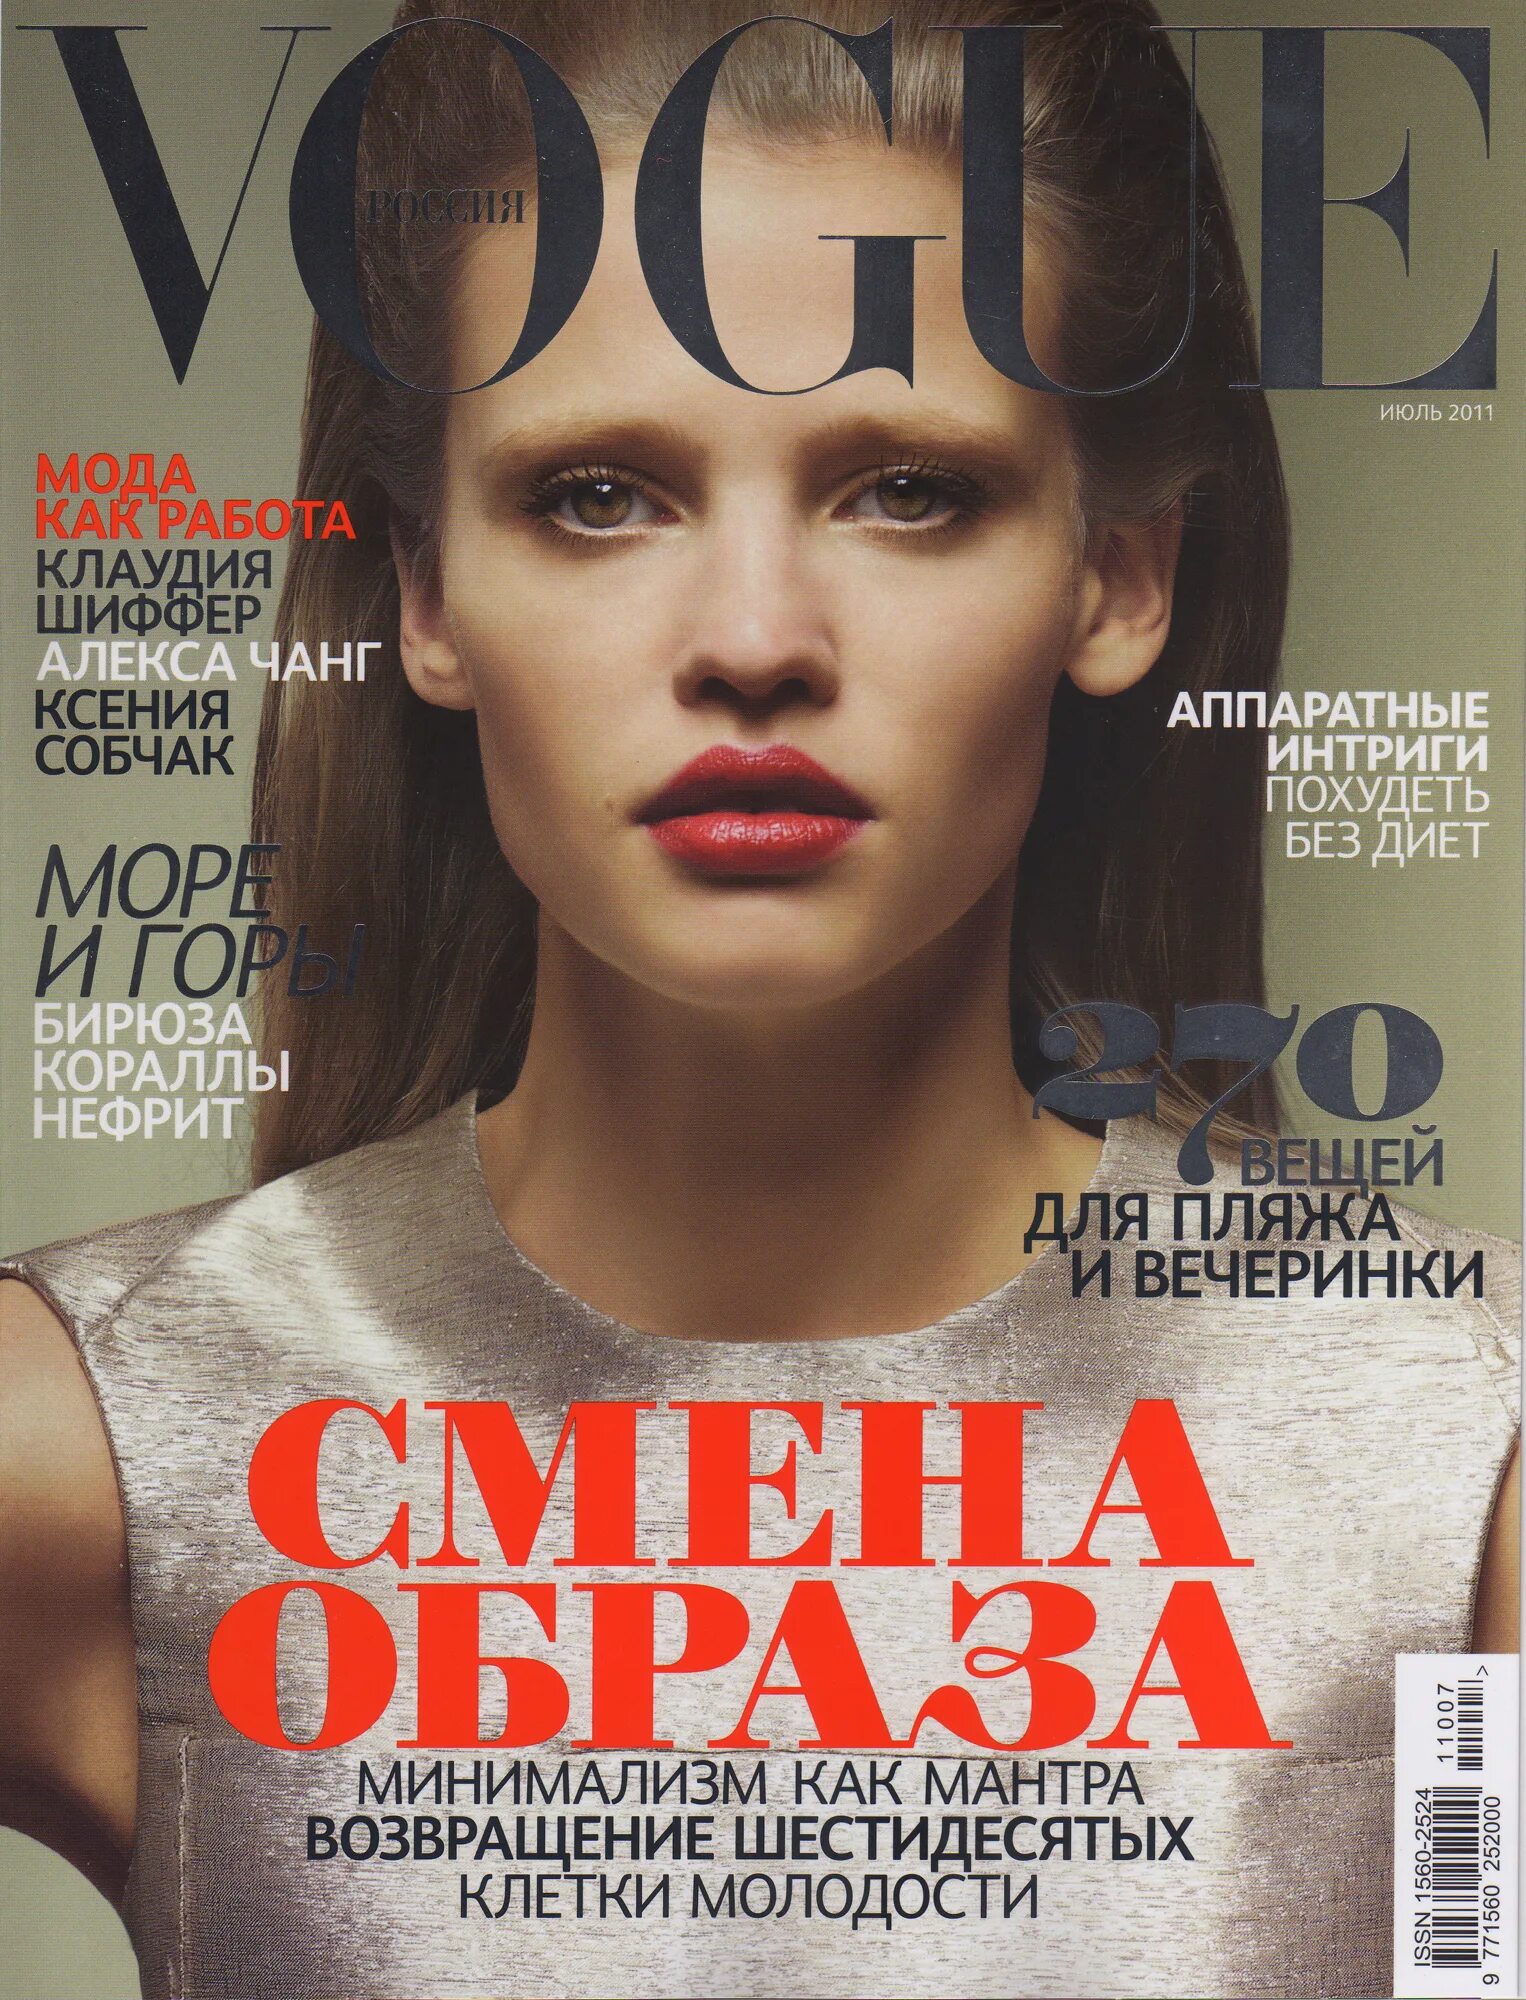 Обложка для журнала. Обложка журнала Vogue. Обложка глянцевого журнала.